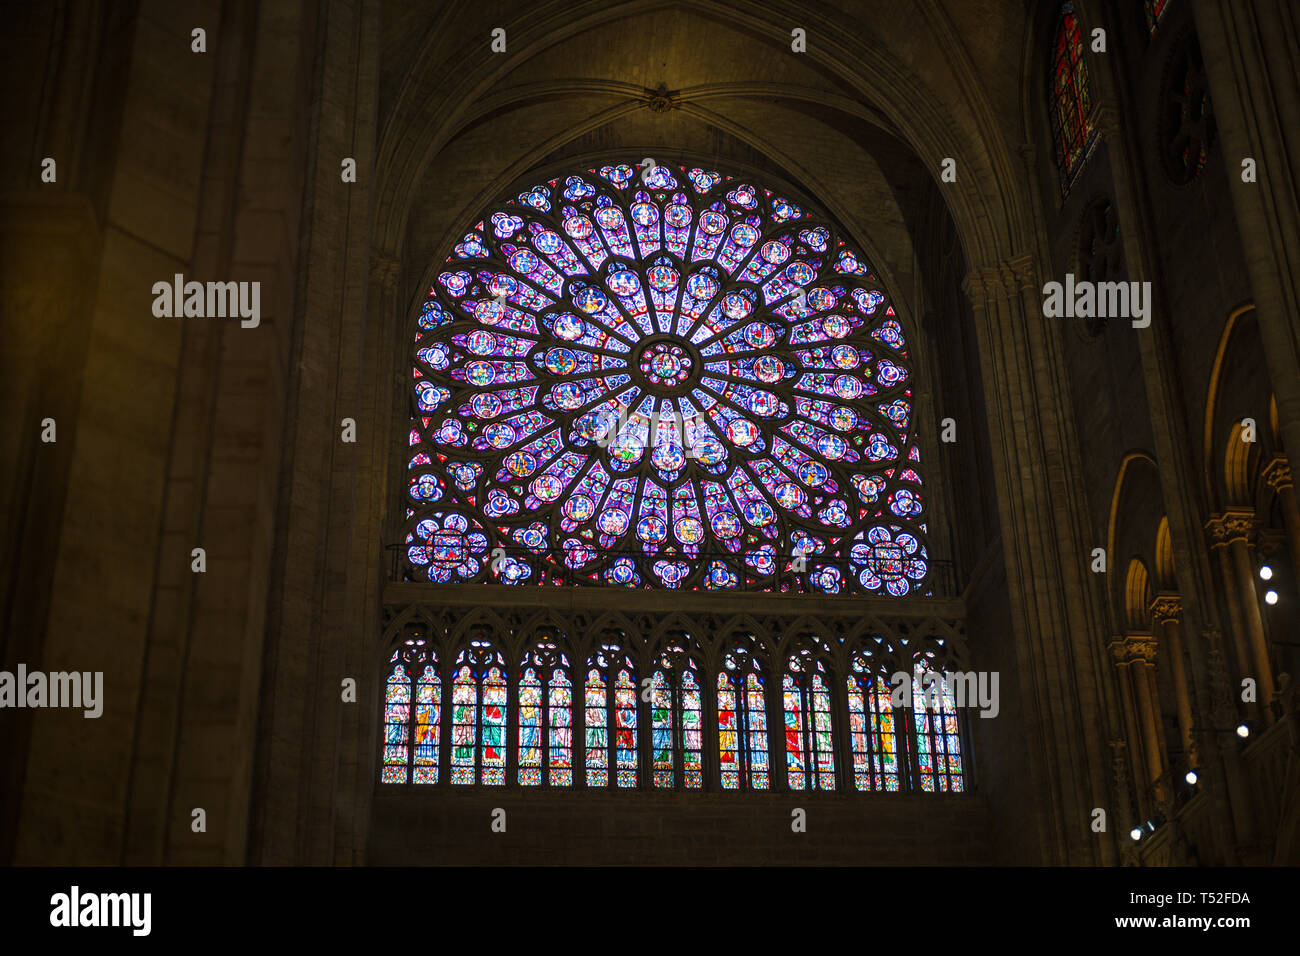 Notre Dame rose window, Paris France Stock Photo